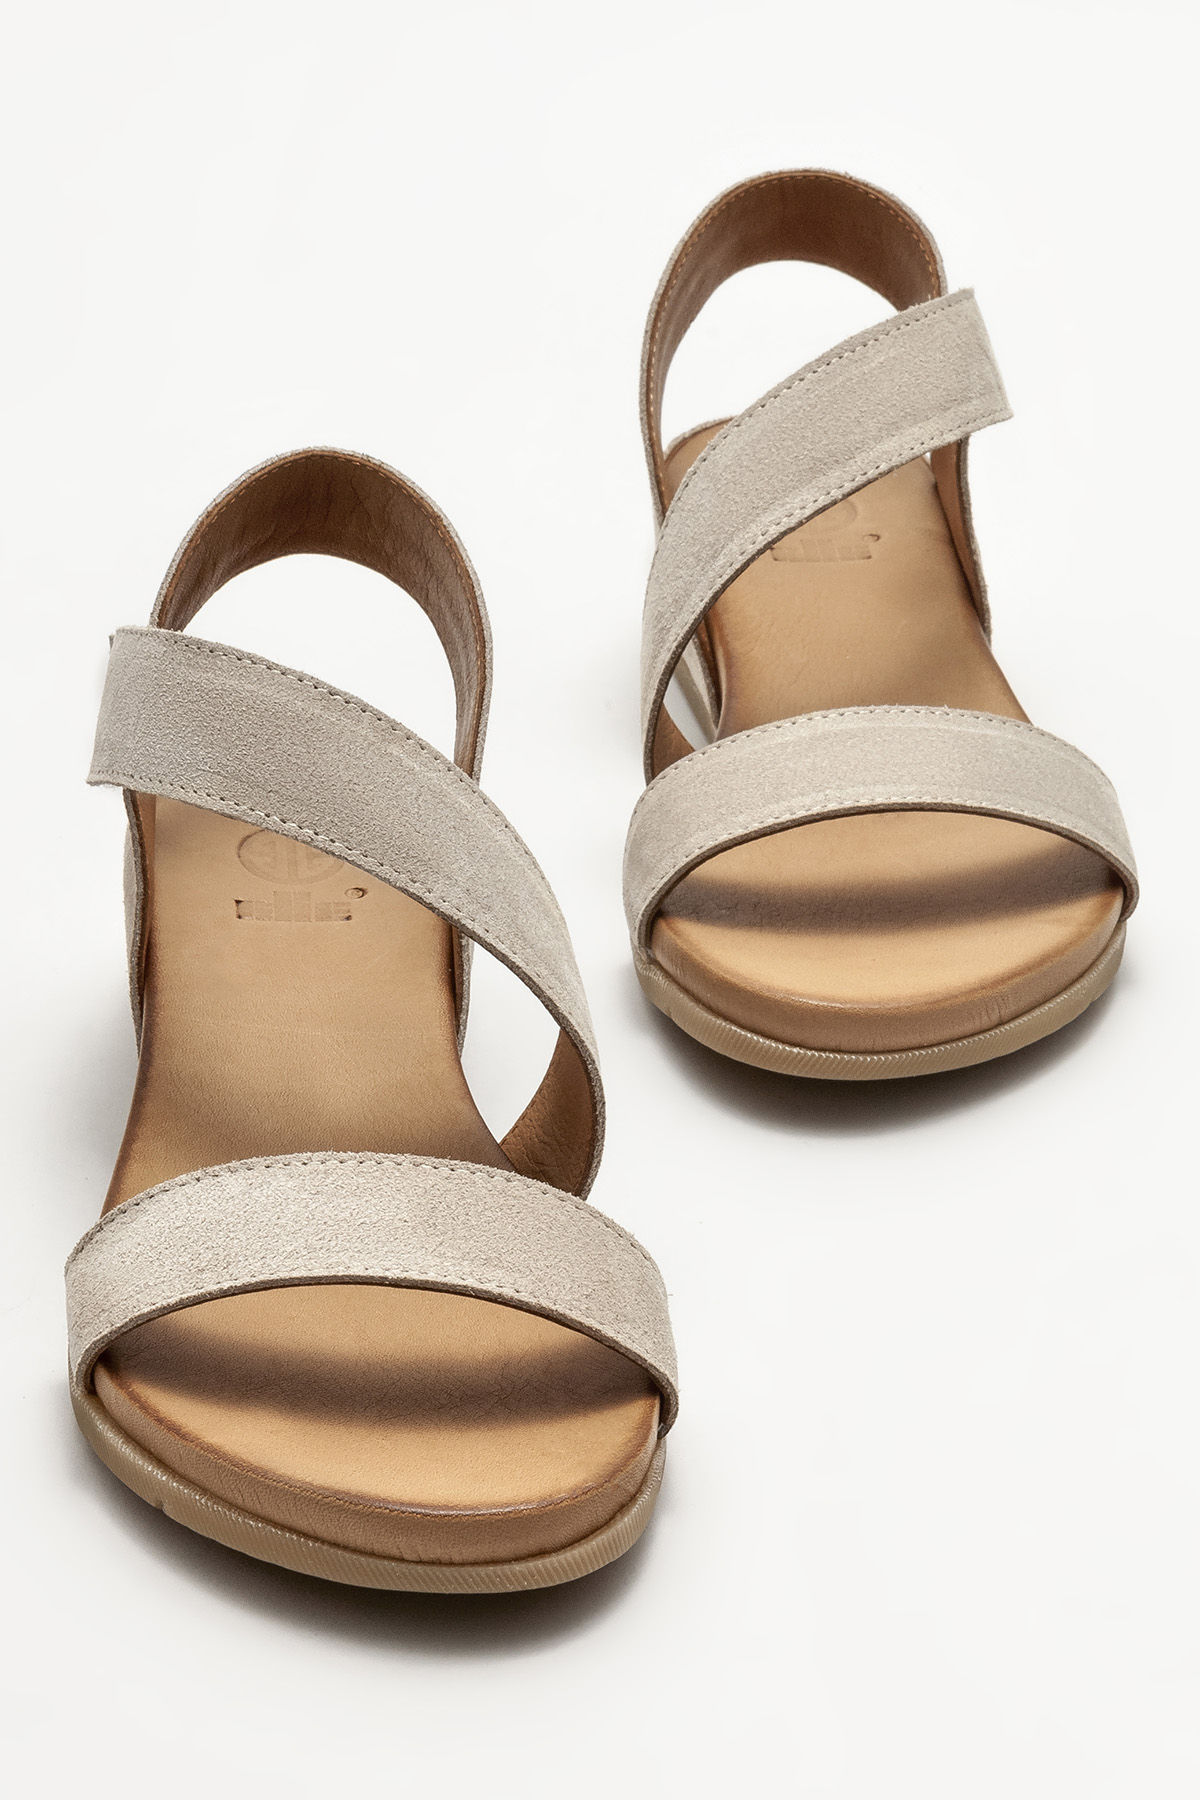 Bej Deri Kadın Dolgu Topuklu Sandalet Satın Al! ZENNA-1-12 Fiyatı | Elle  Shoes